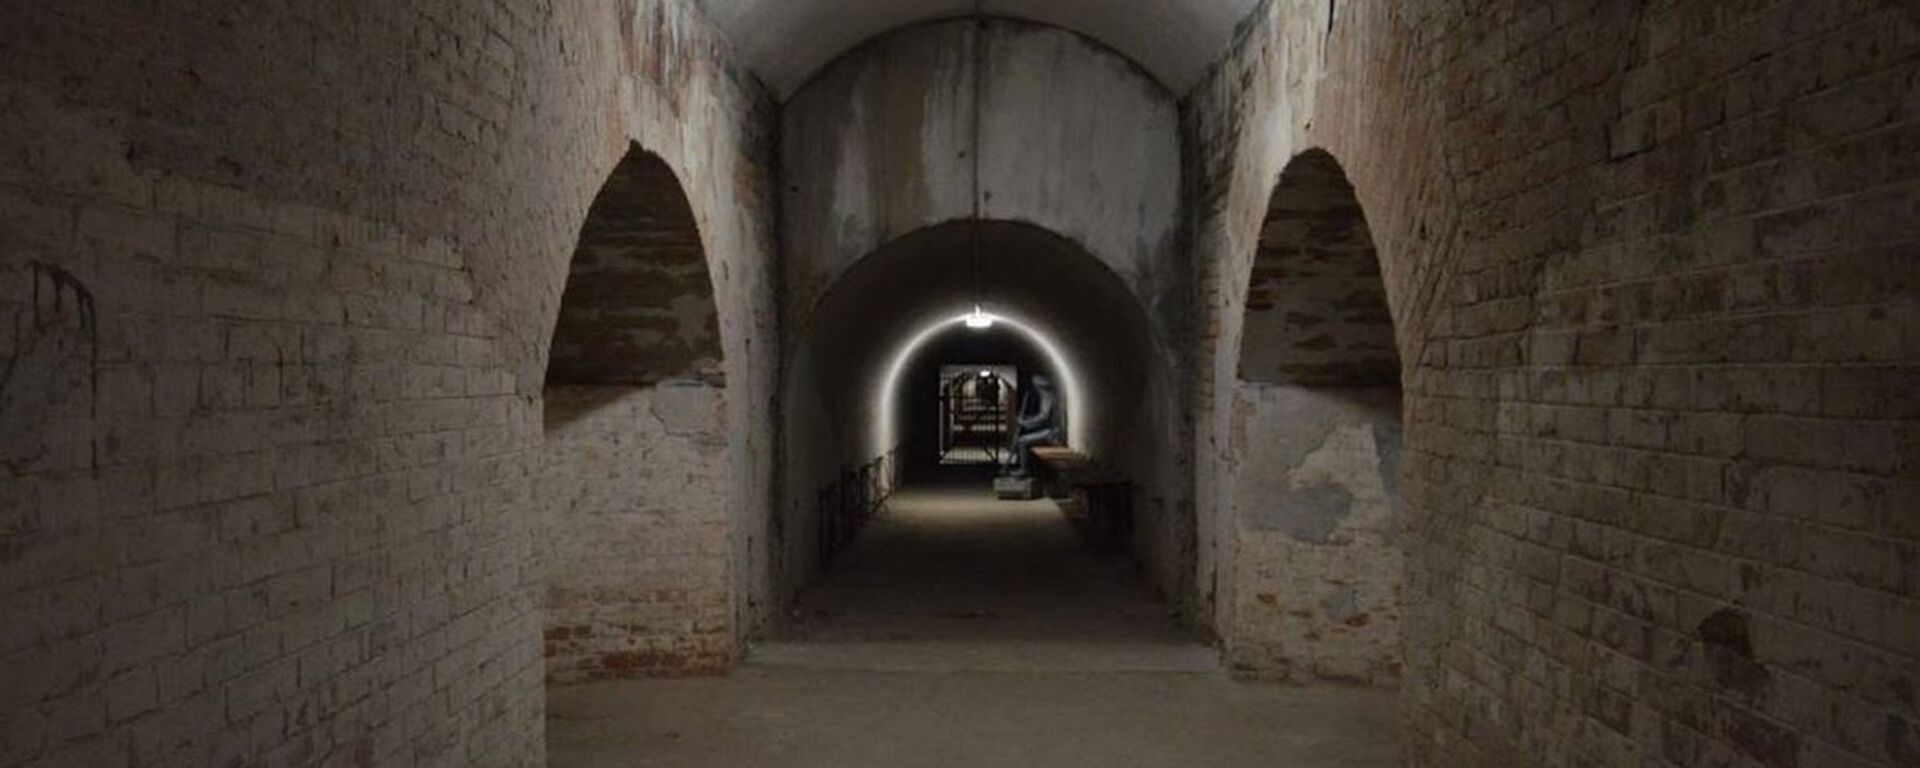 Потерна - подземный коридор в фортах - Sputnik Беларусь, 1920, 20.01.2021